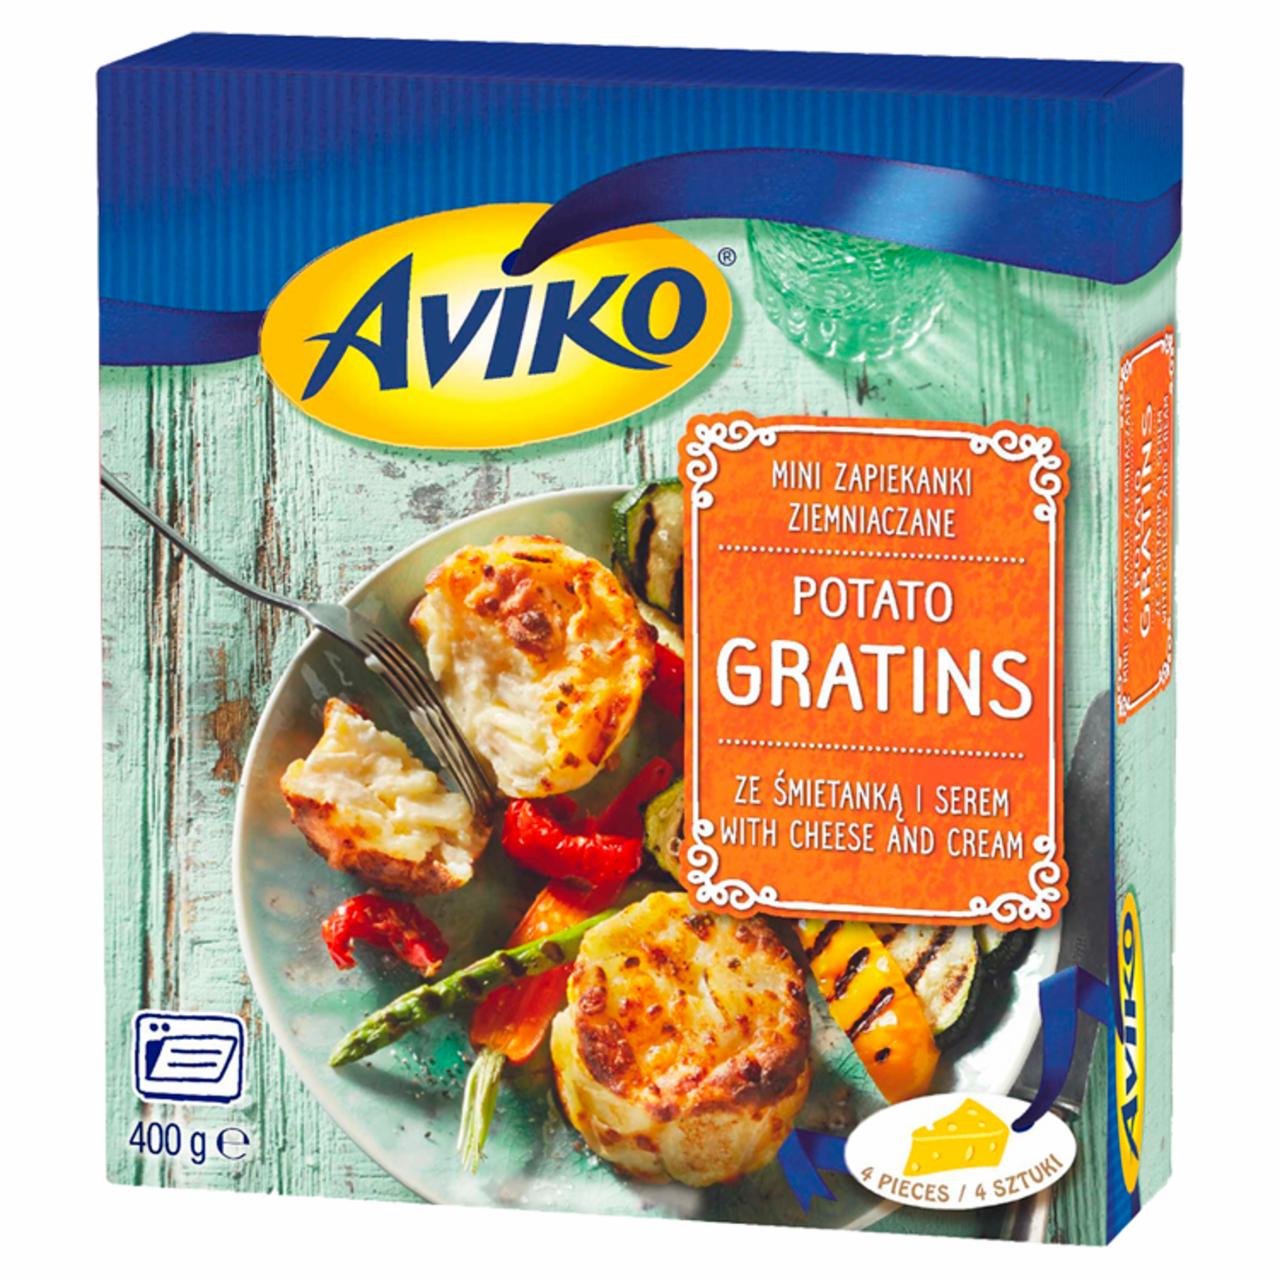 Zdjęcia - Aviko Mini zapiekanki ziemniaczane ze śmietanką i serem 400 g (4 sztuki)